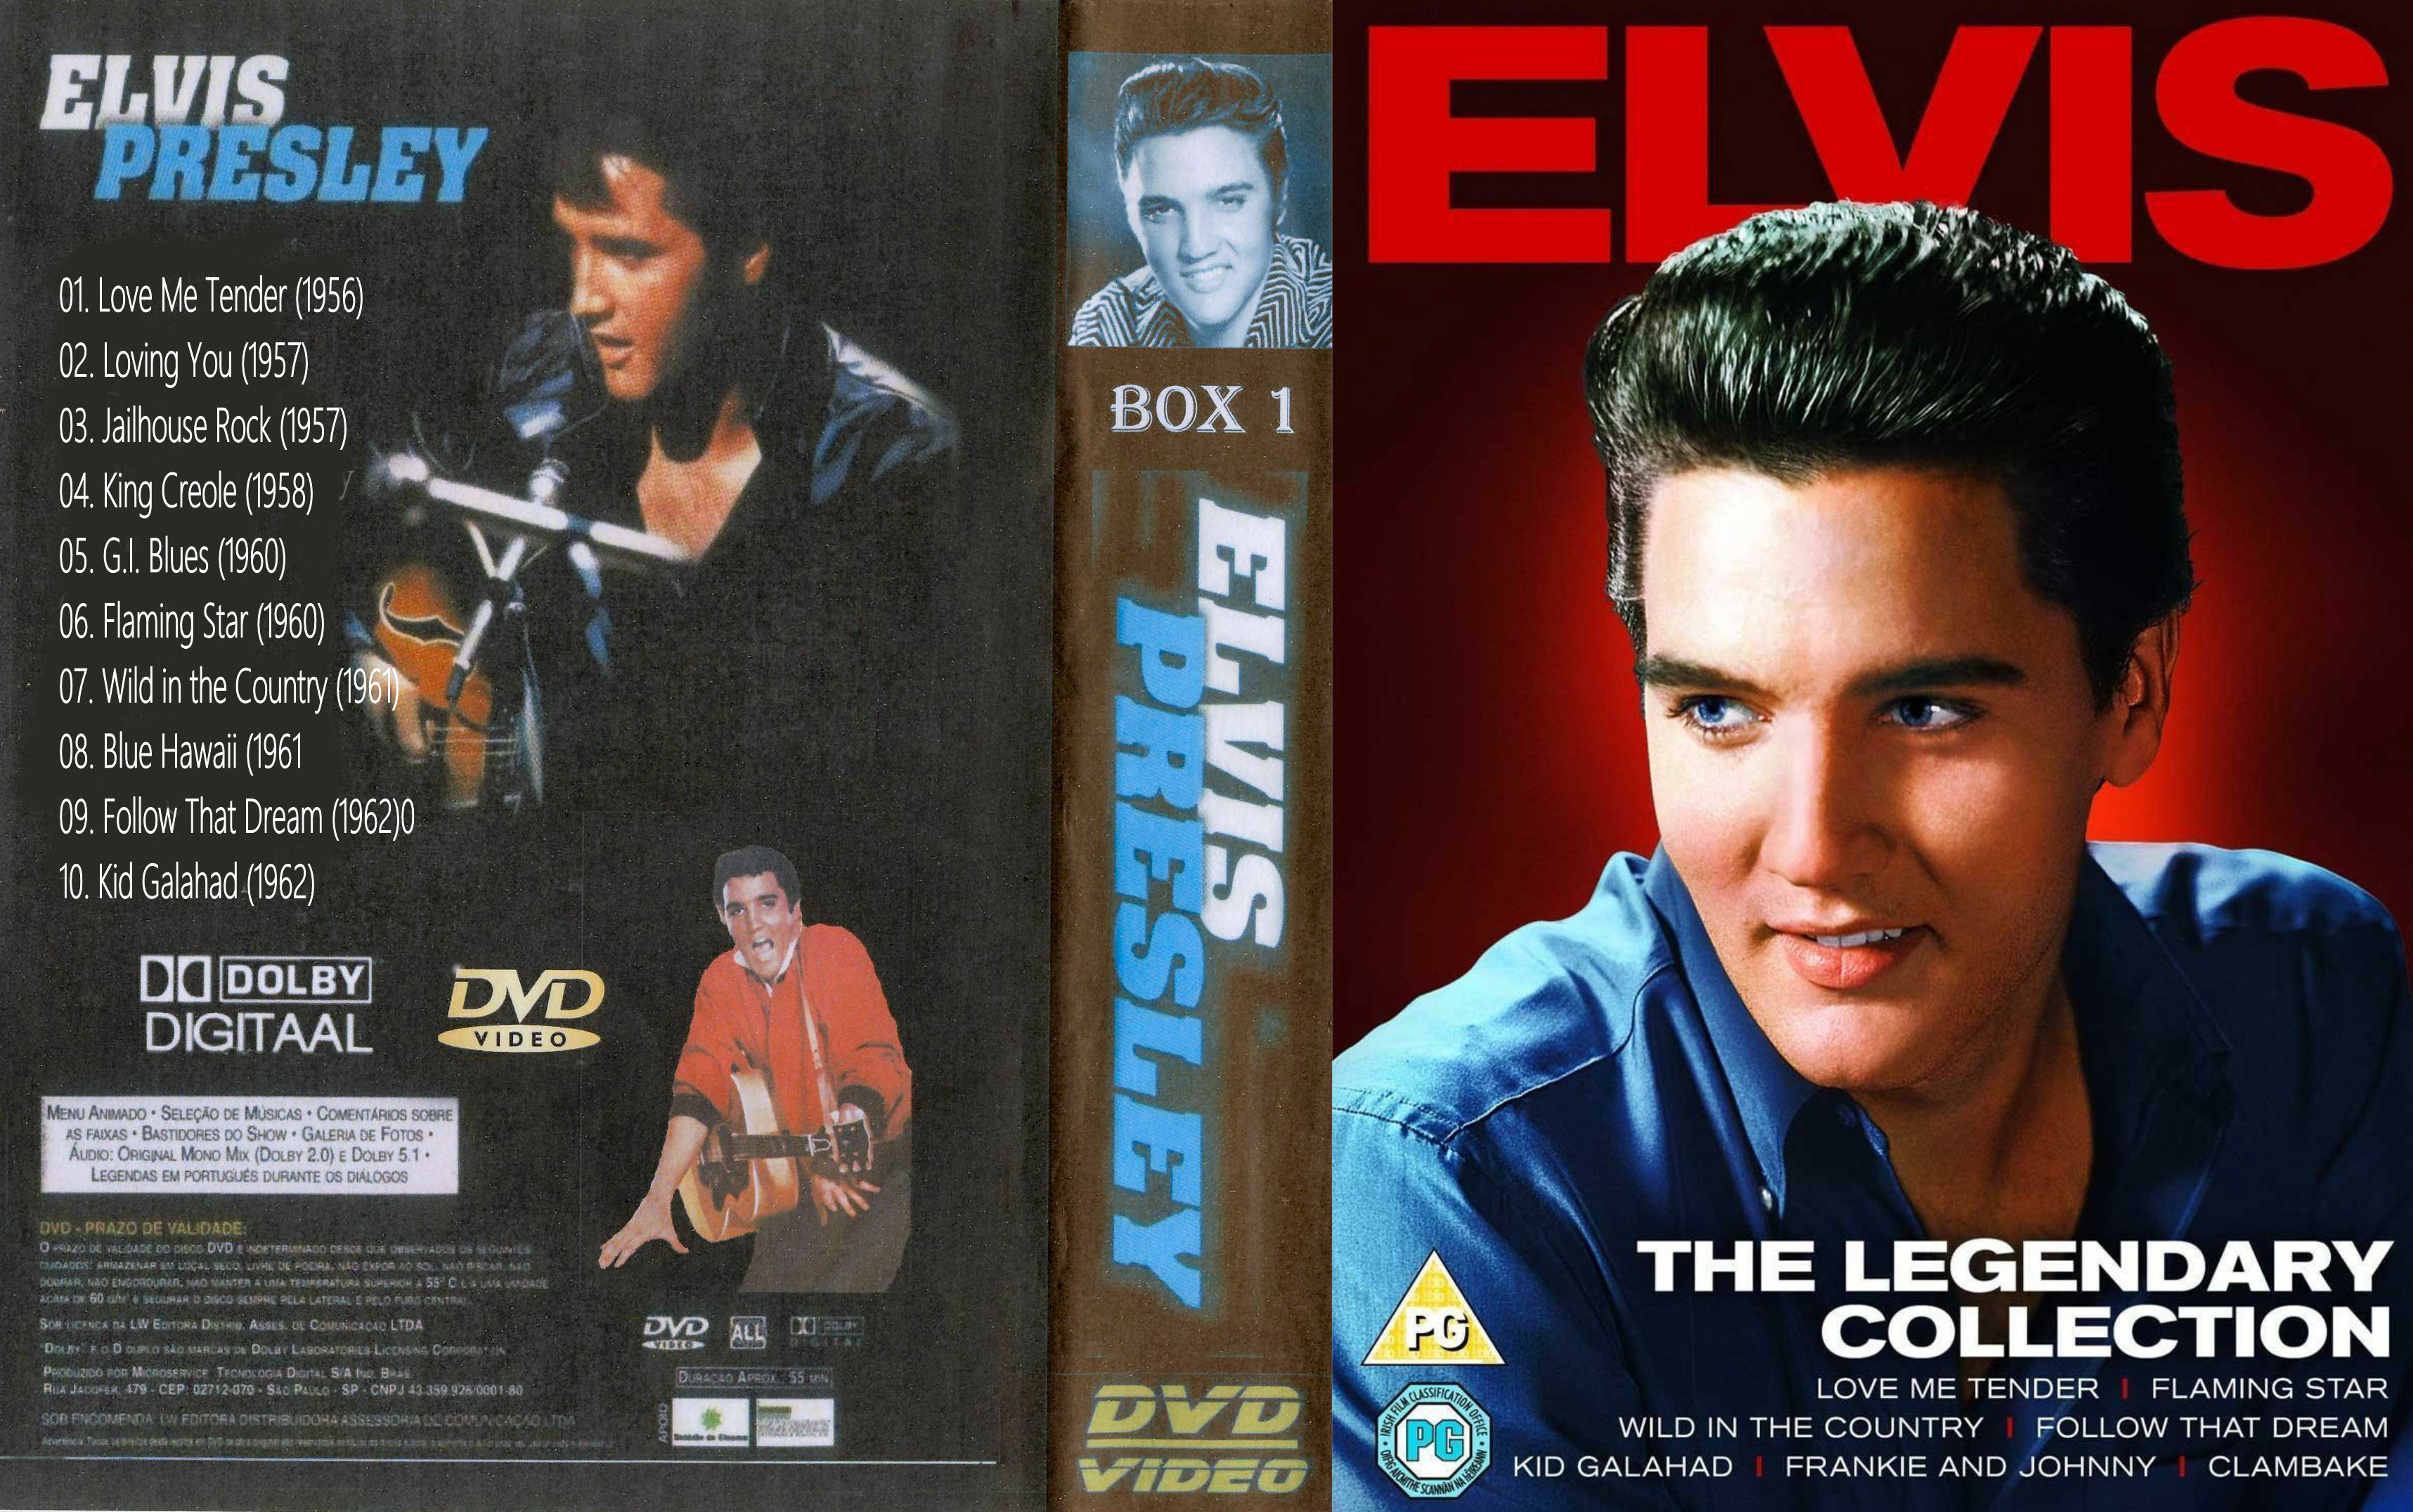 Elvis Presley Collectie ( 02 - Loving You ) DvD 2 van 31